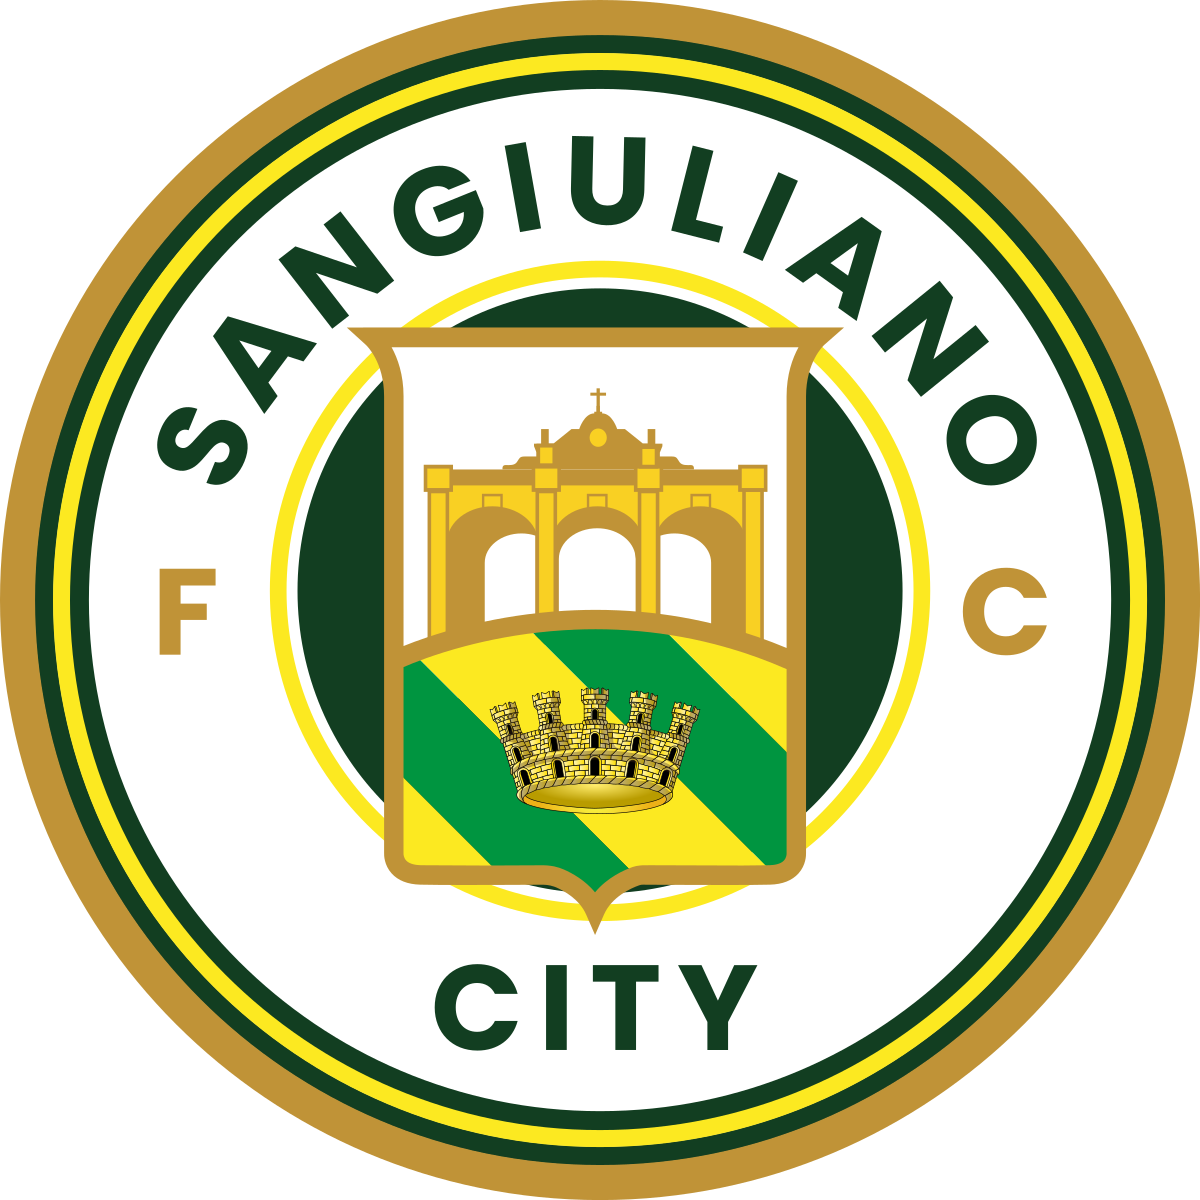 SANGIULIANO CITY